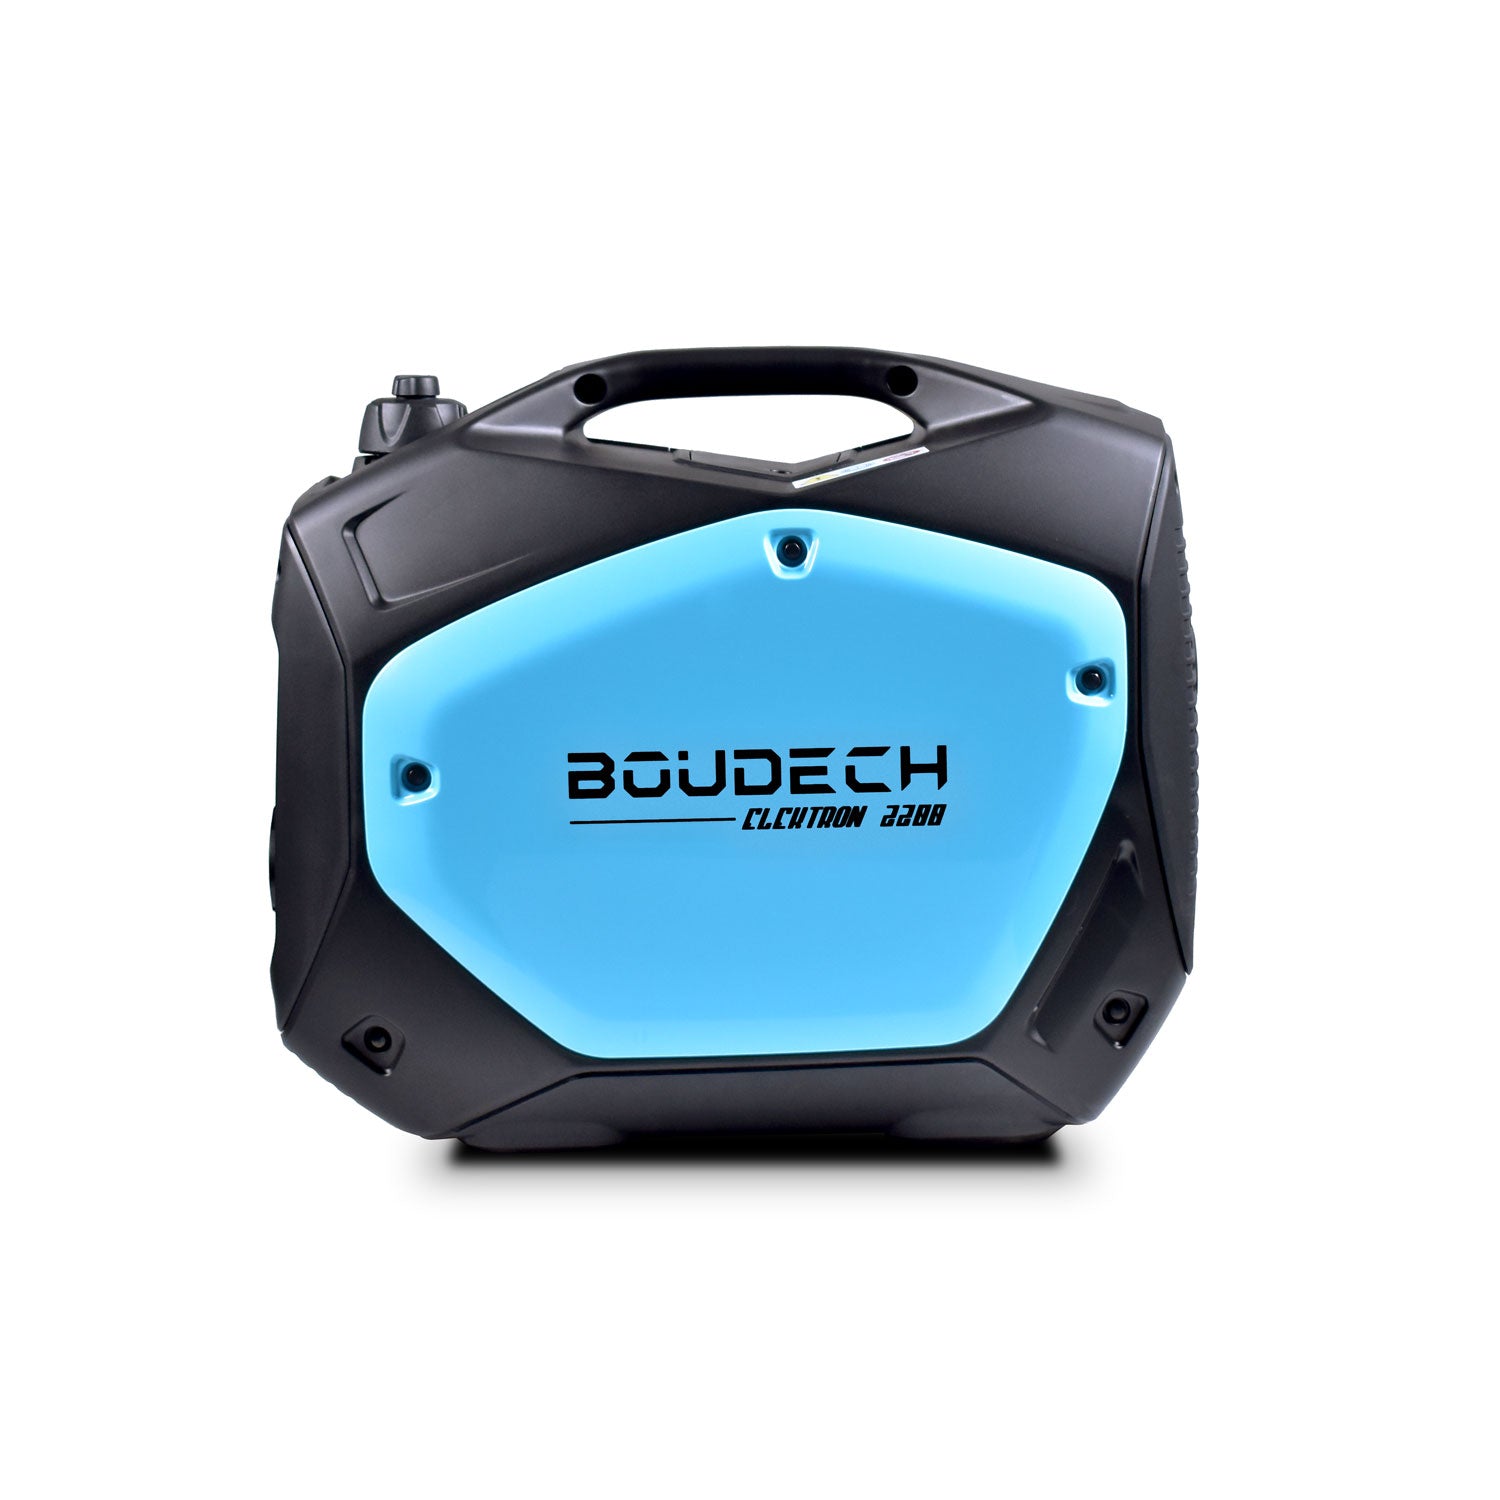 BOUDECH - Elektron 2200 - Generatore Digitale ad Inverter da 2KW/4HP con motore OHV 4 tempi gruppo elettrogeno a risparmio energetico da 2200W